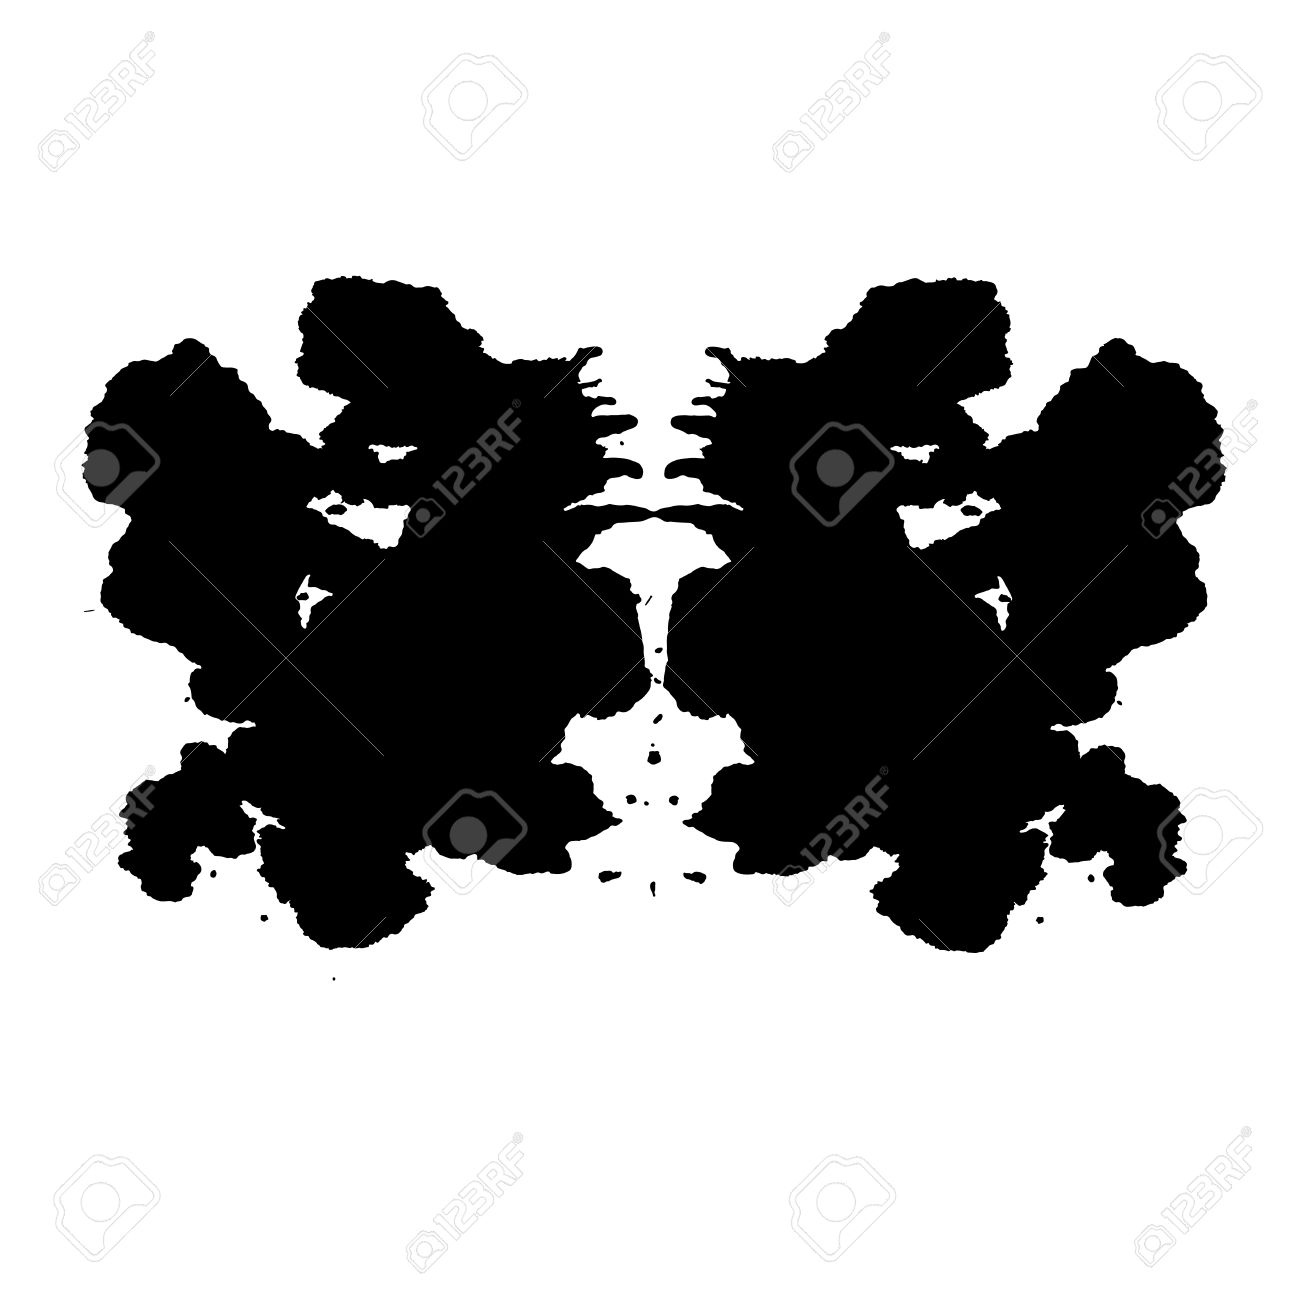 Rorschach Inkblot Test Illustration, Random Abstract Background.